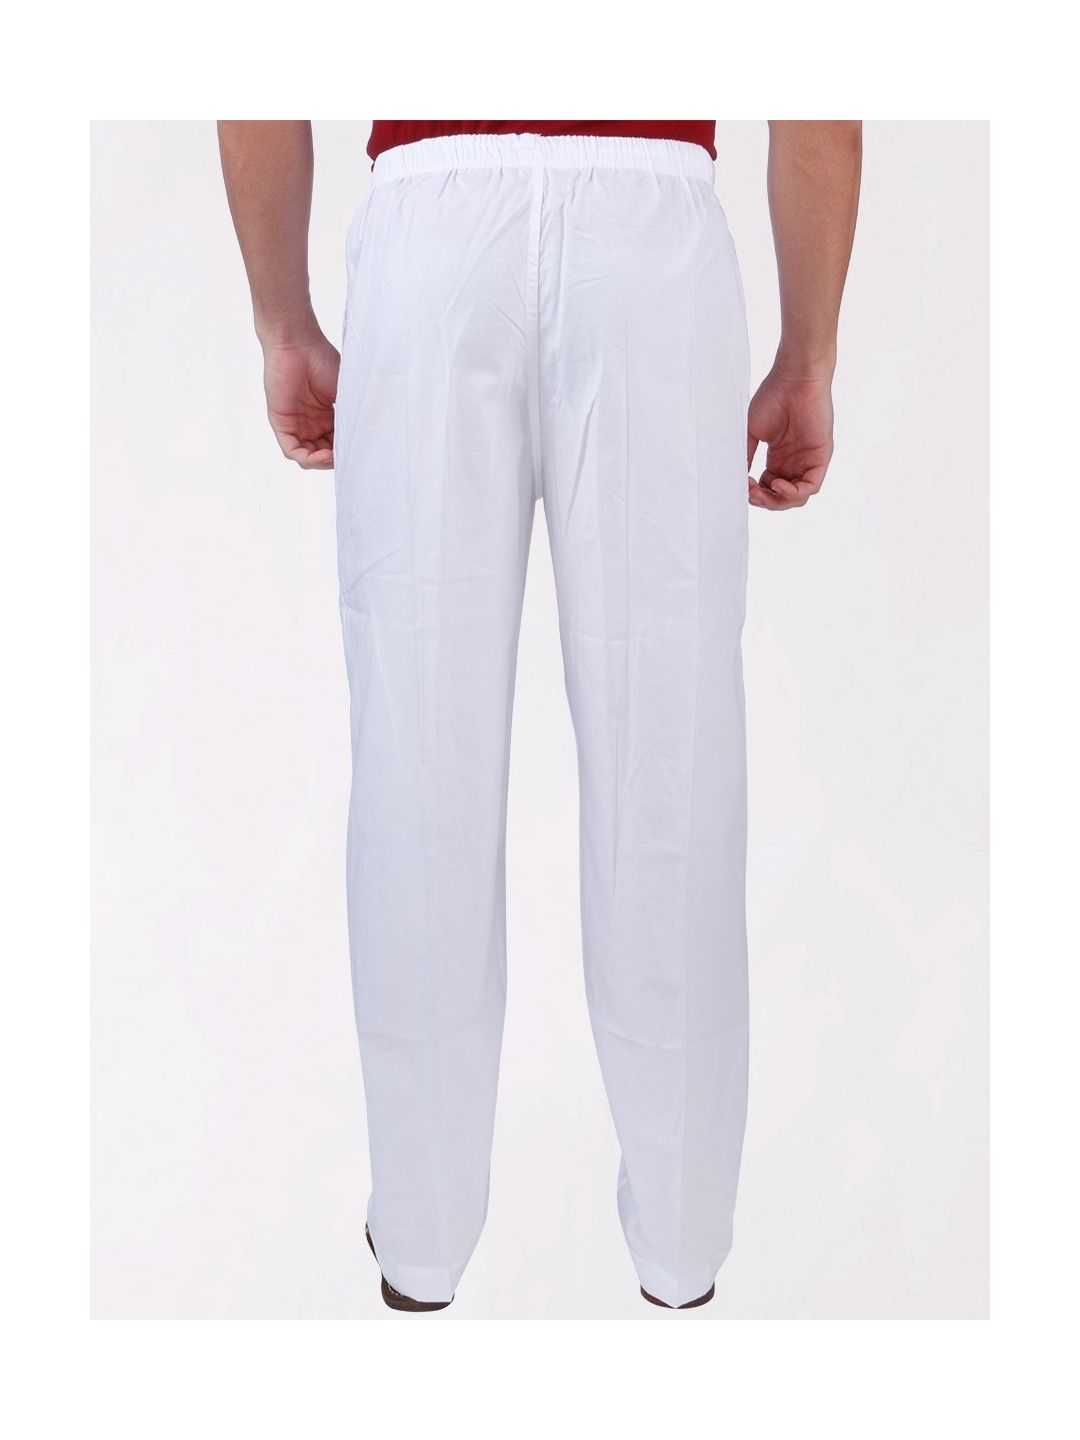 Buy Pajama Drawstring Lounge Pants online - Etcetera